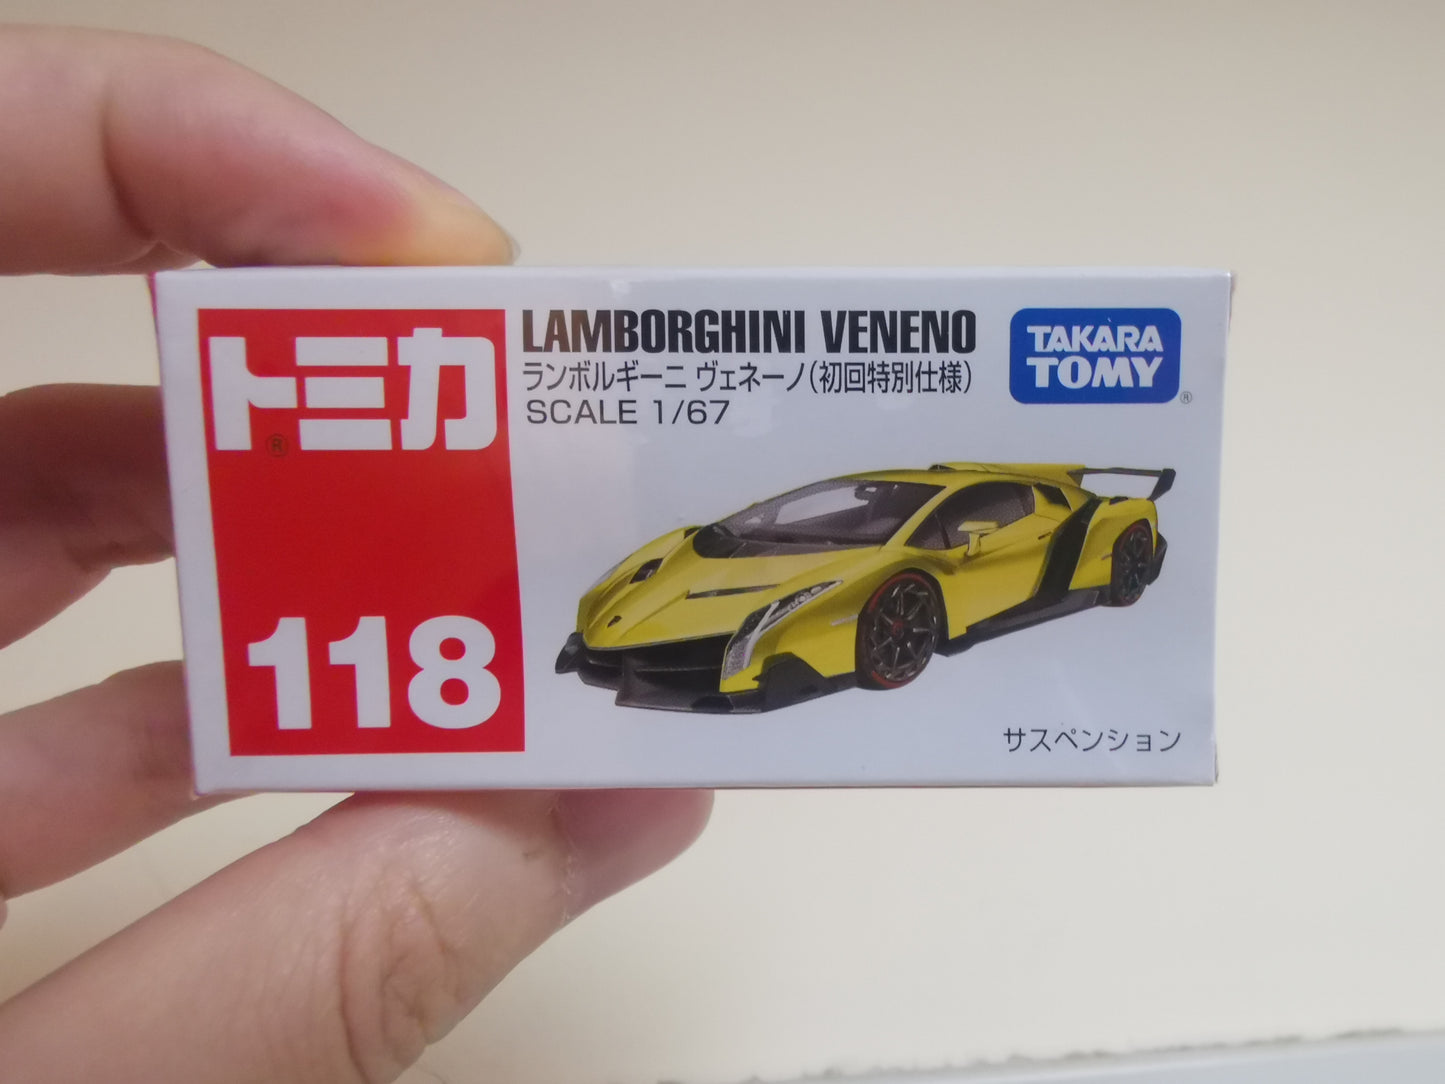 Tomica No.118 Lamborghini Veneno 1st edition